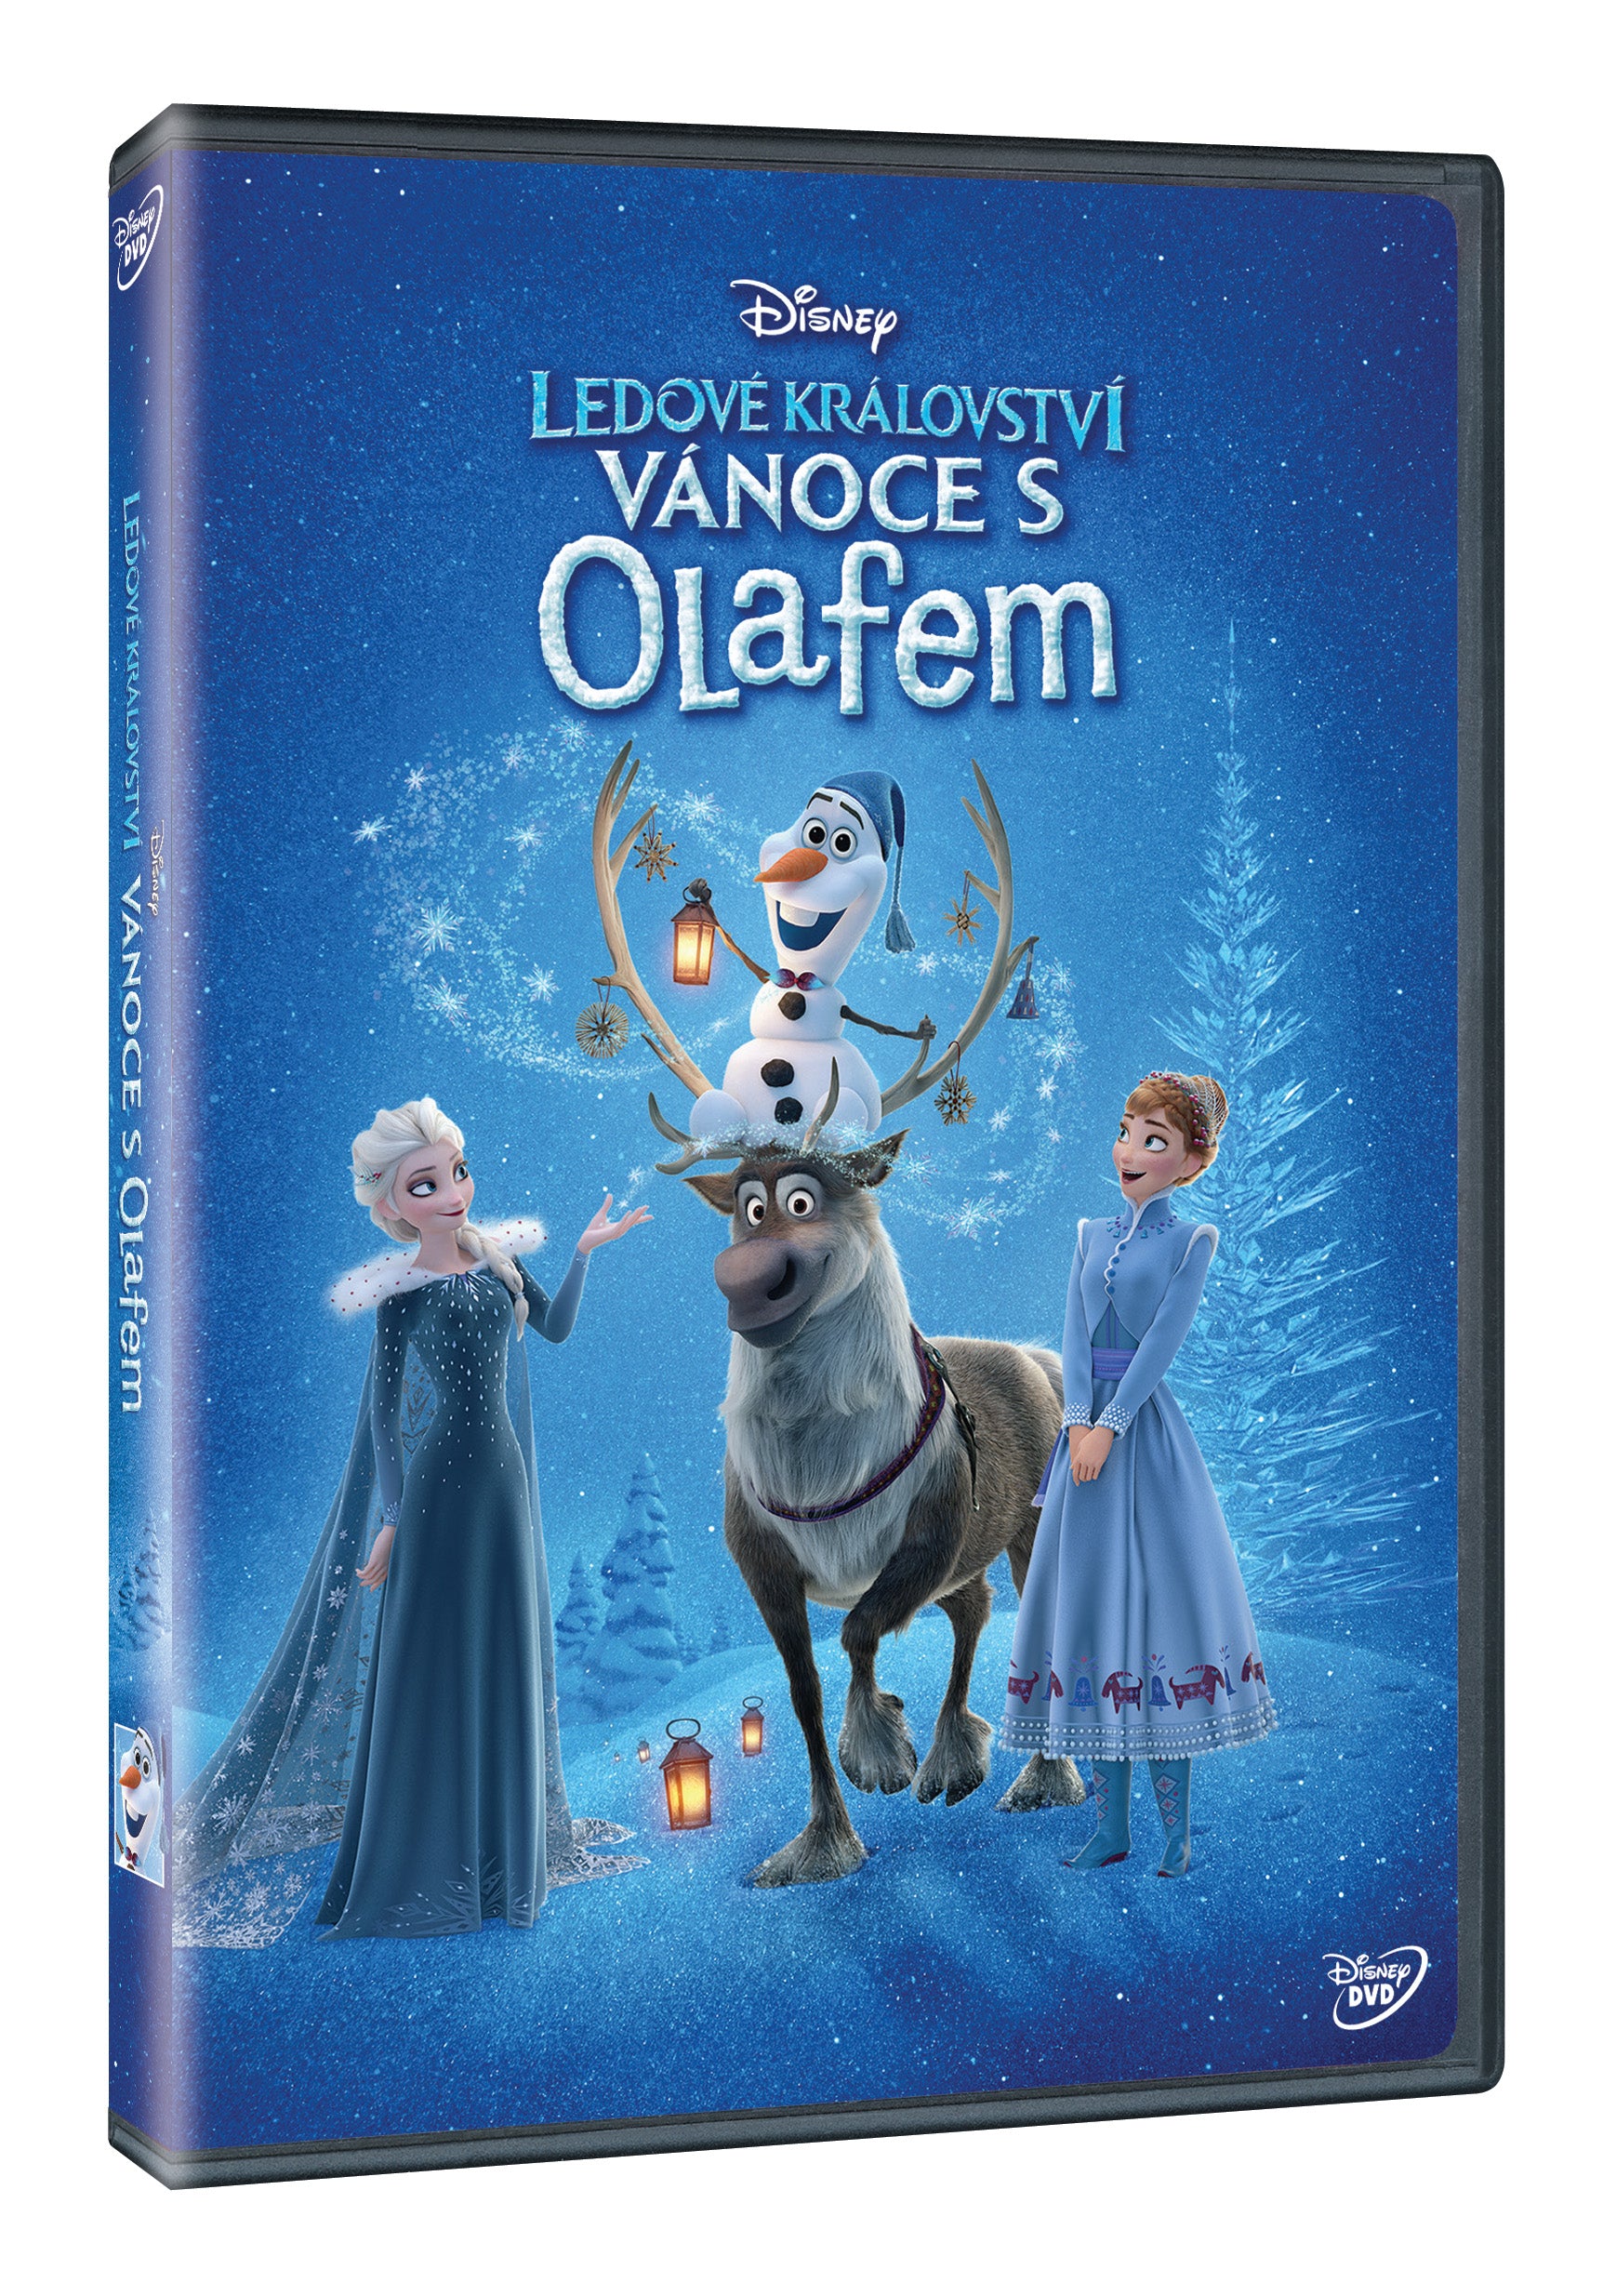 Ledove kralovstvi: Vanoces Olafem DVD / Olafs Frozen Adventure